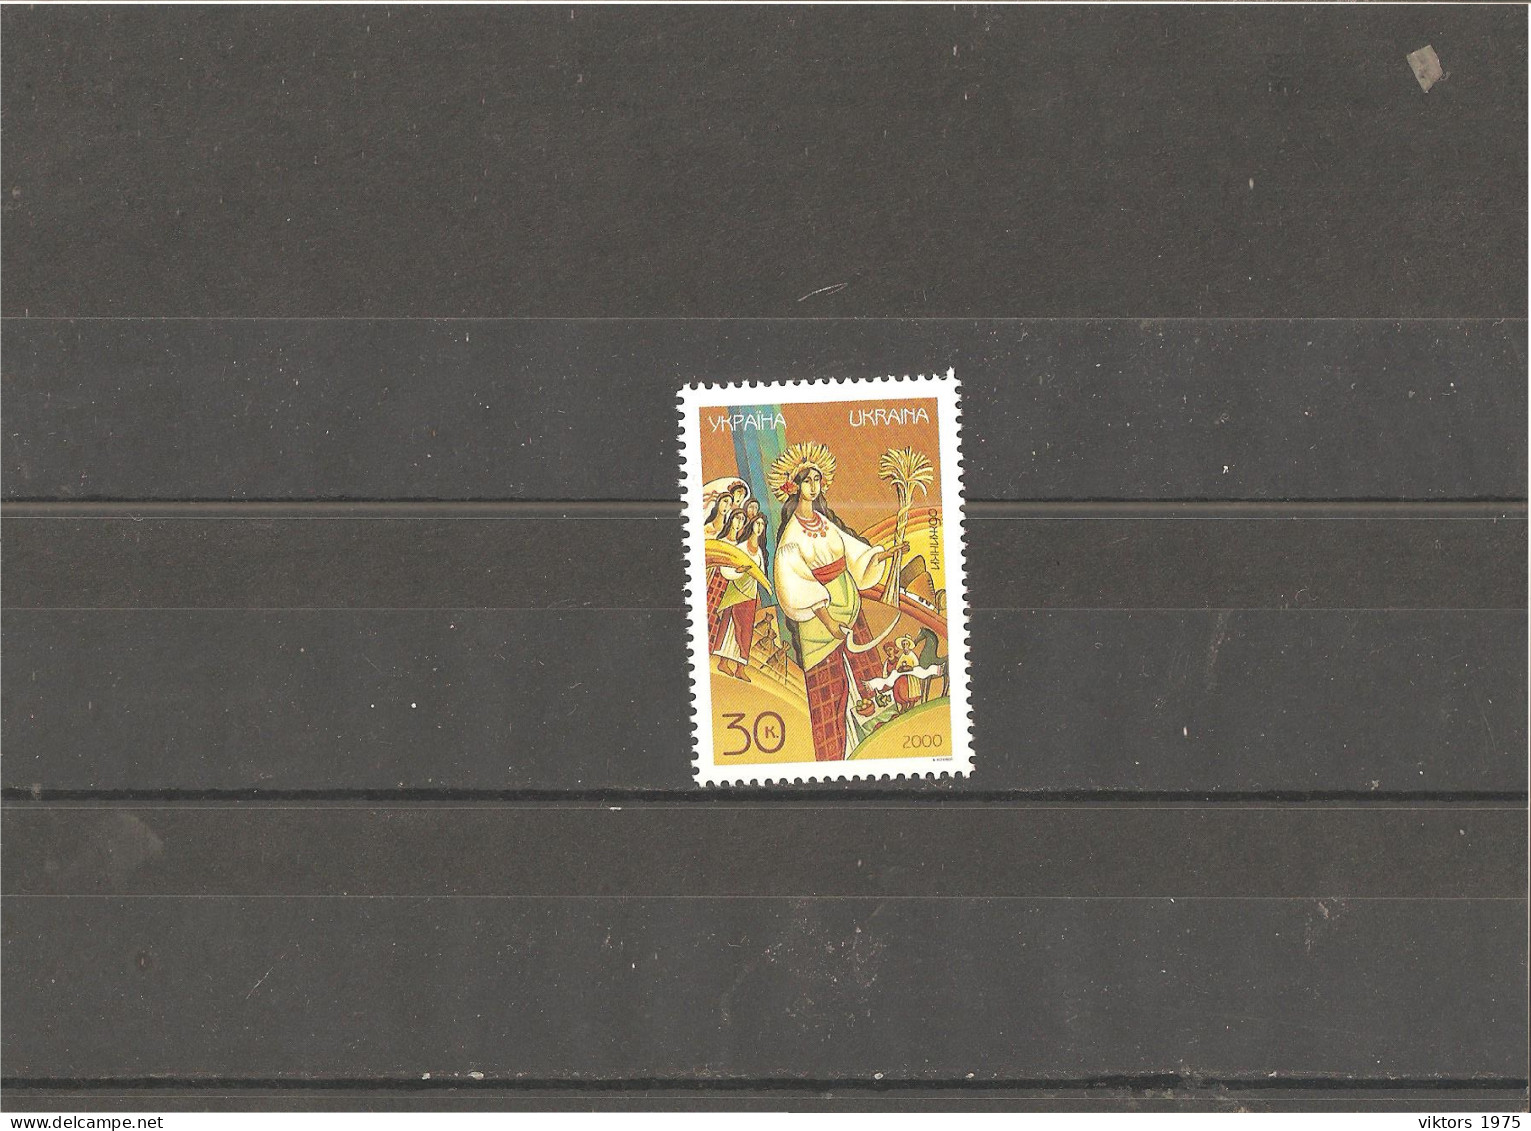 MNH Stamp Nr.393 In MICHEL Catalog - Ukraine